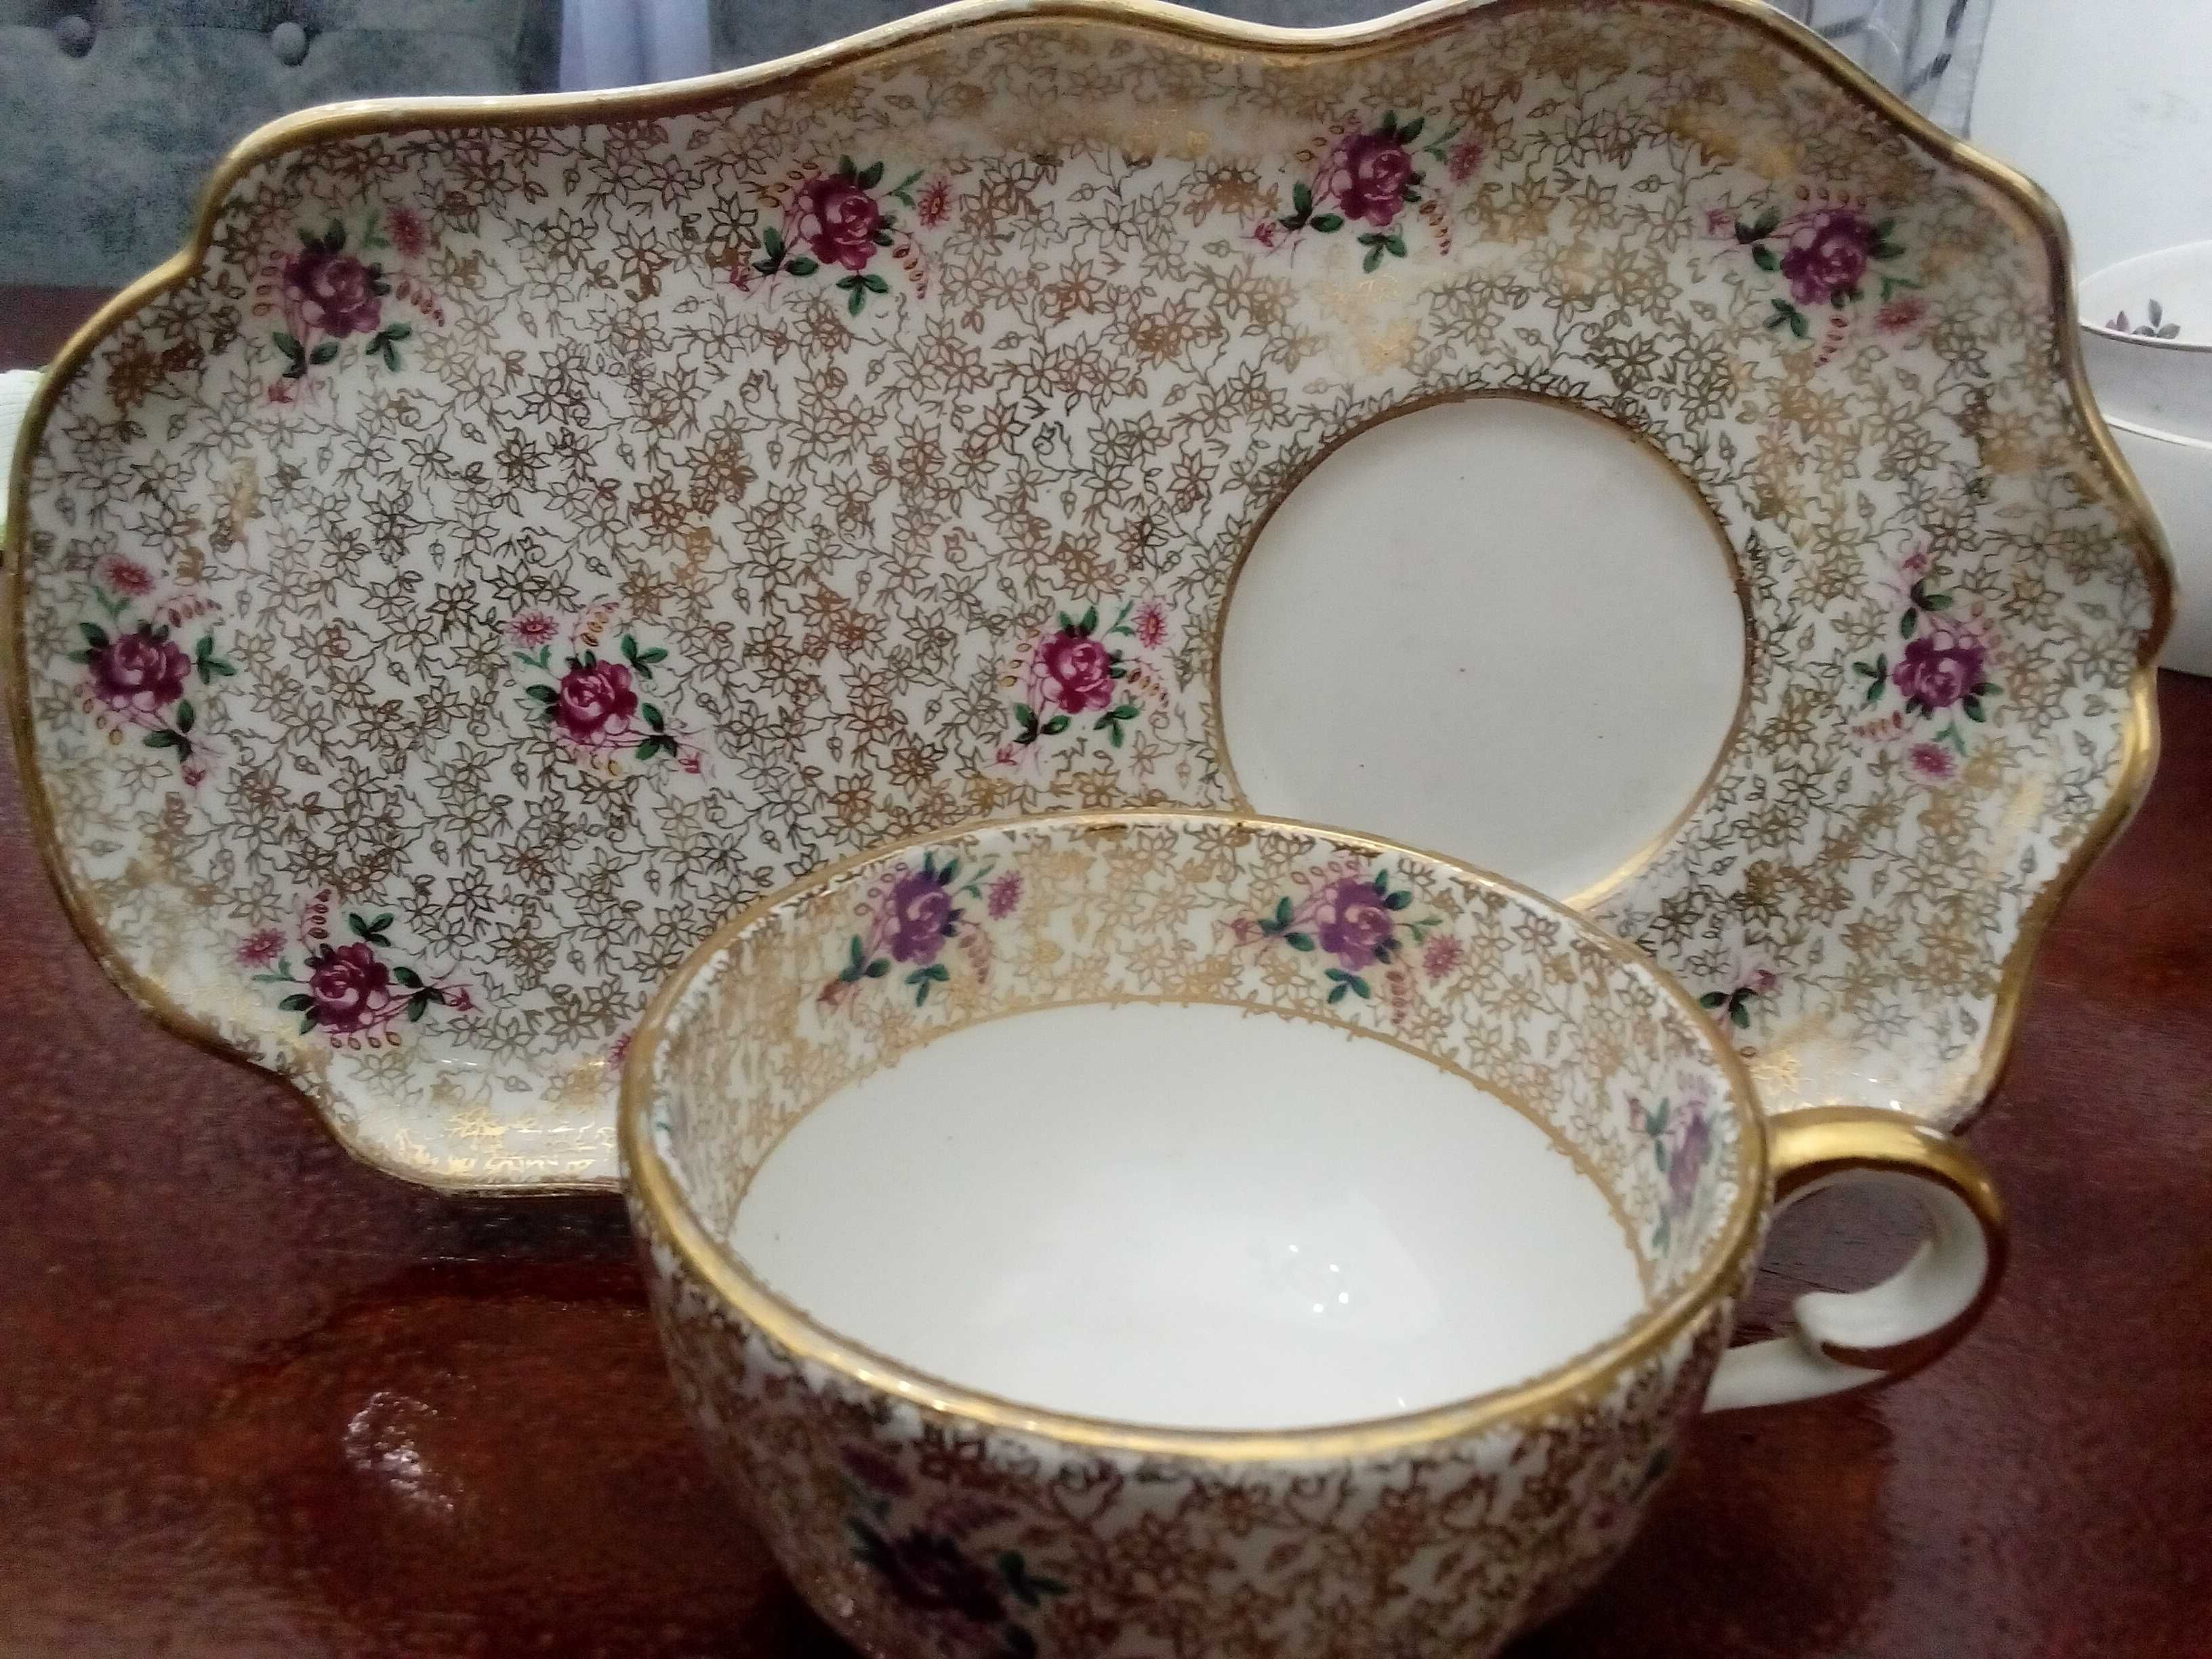 Vendo chávena com prato com flores e dourado Athenea OAL 2110 Coleção